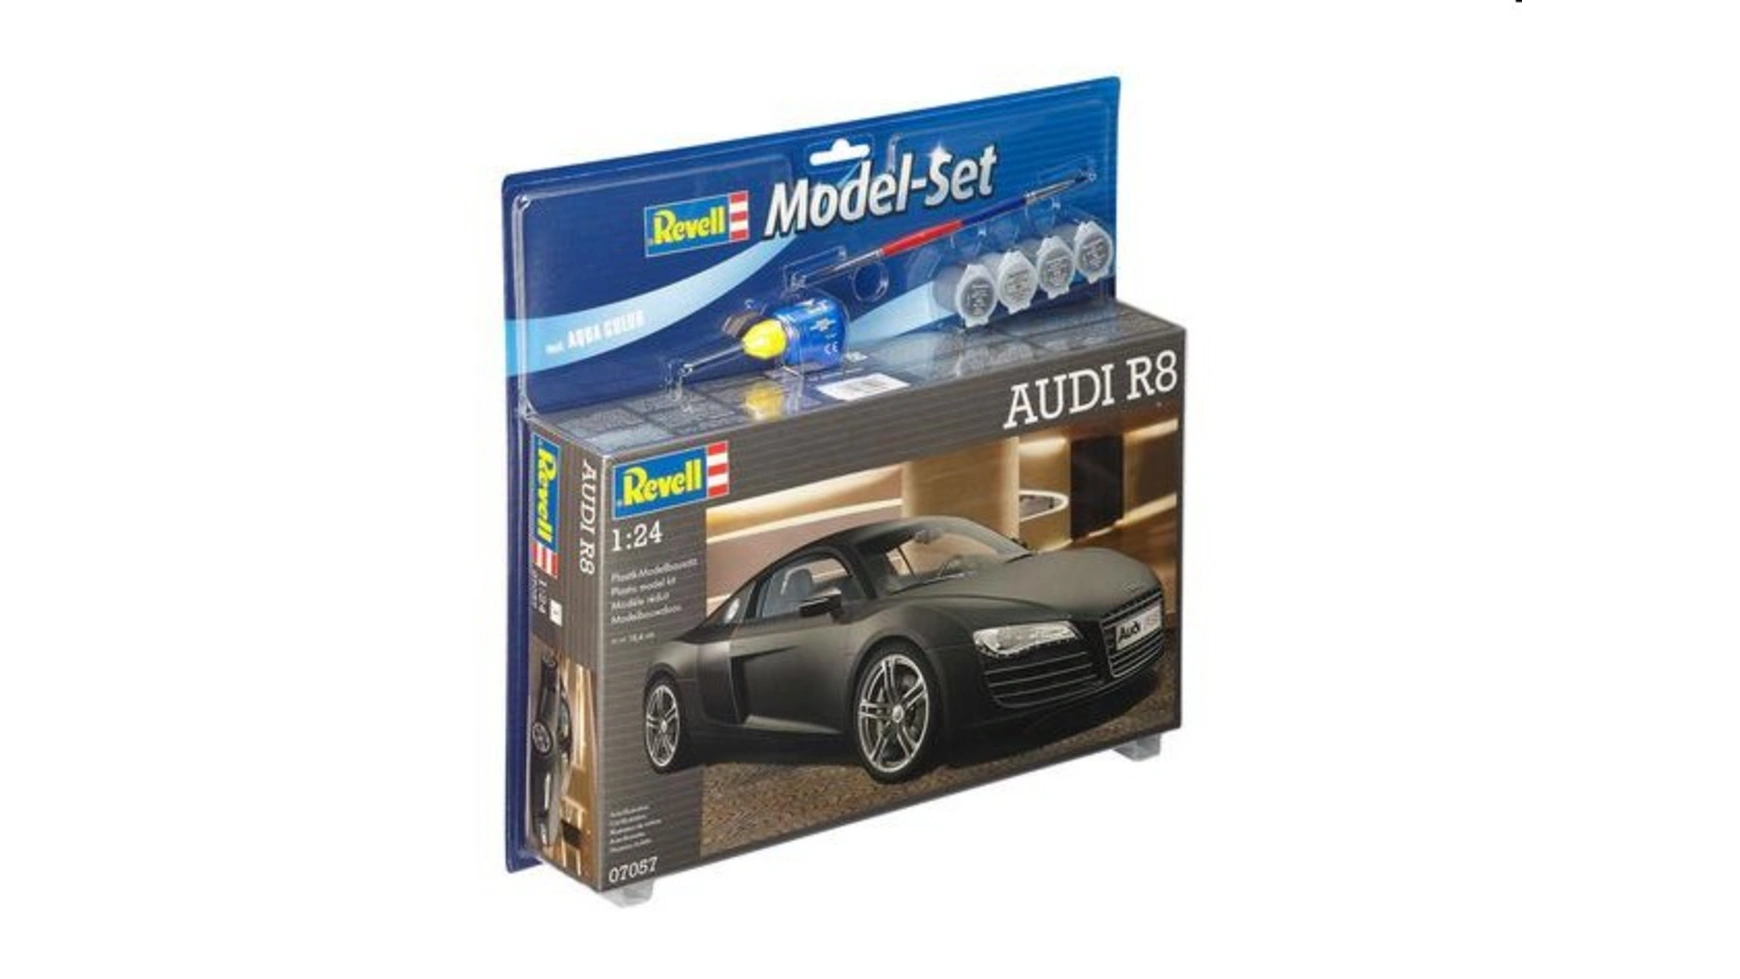 Revell наборы моделей для сборки моделей набор моделей AUDI R8 автомобиль audi r8 coupe kinsmart металлический